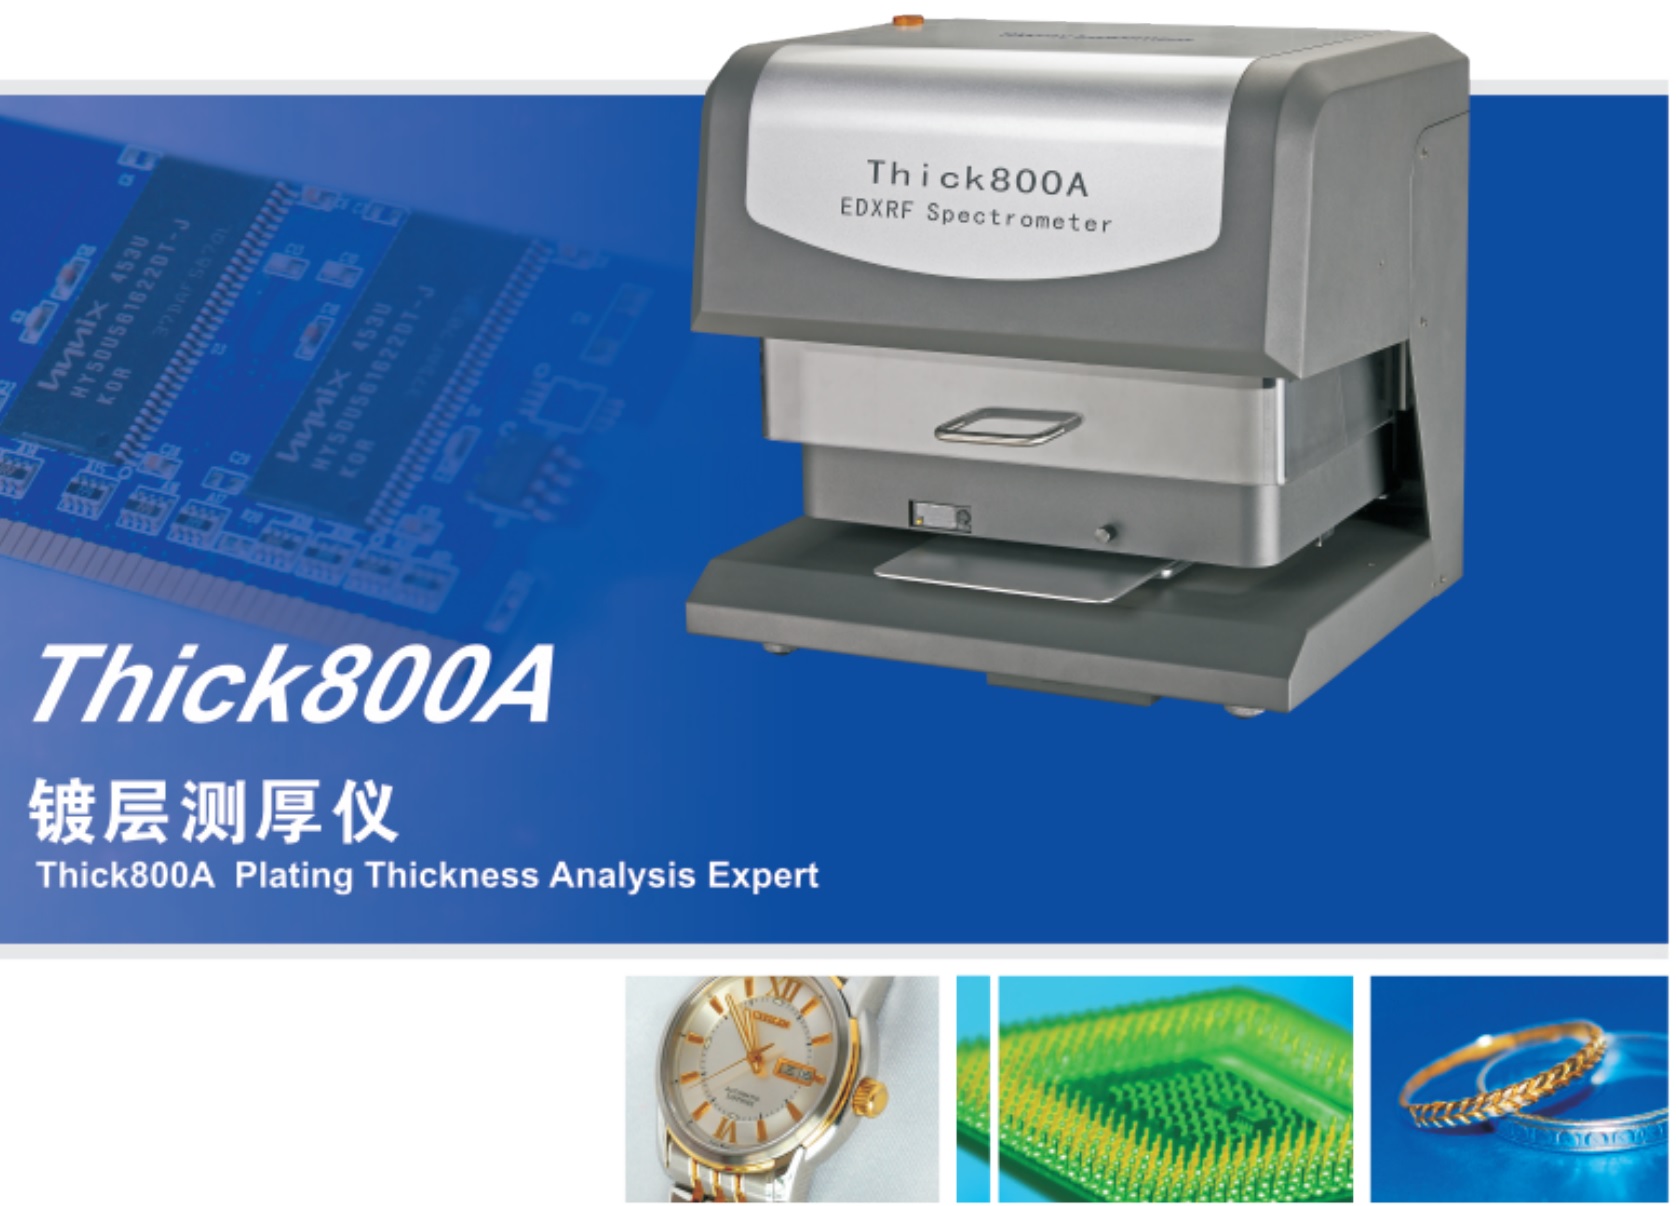 江苏天瑞仪器股份有限公司-X荧光光谱仪 镀层膜厚仪 THICK800A 